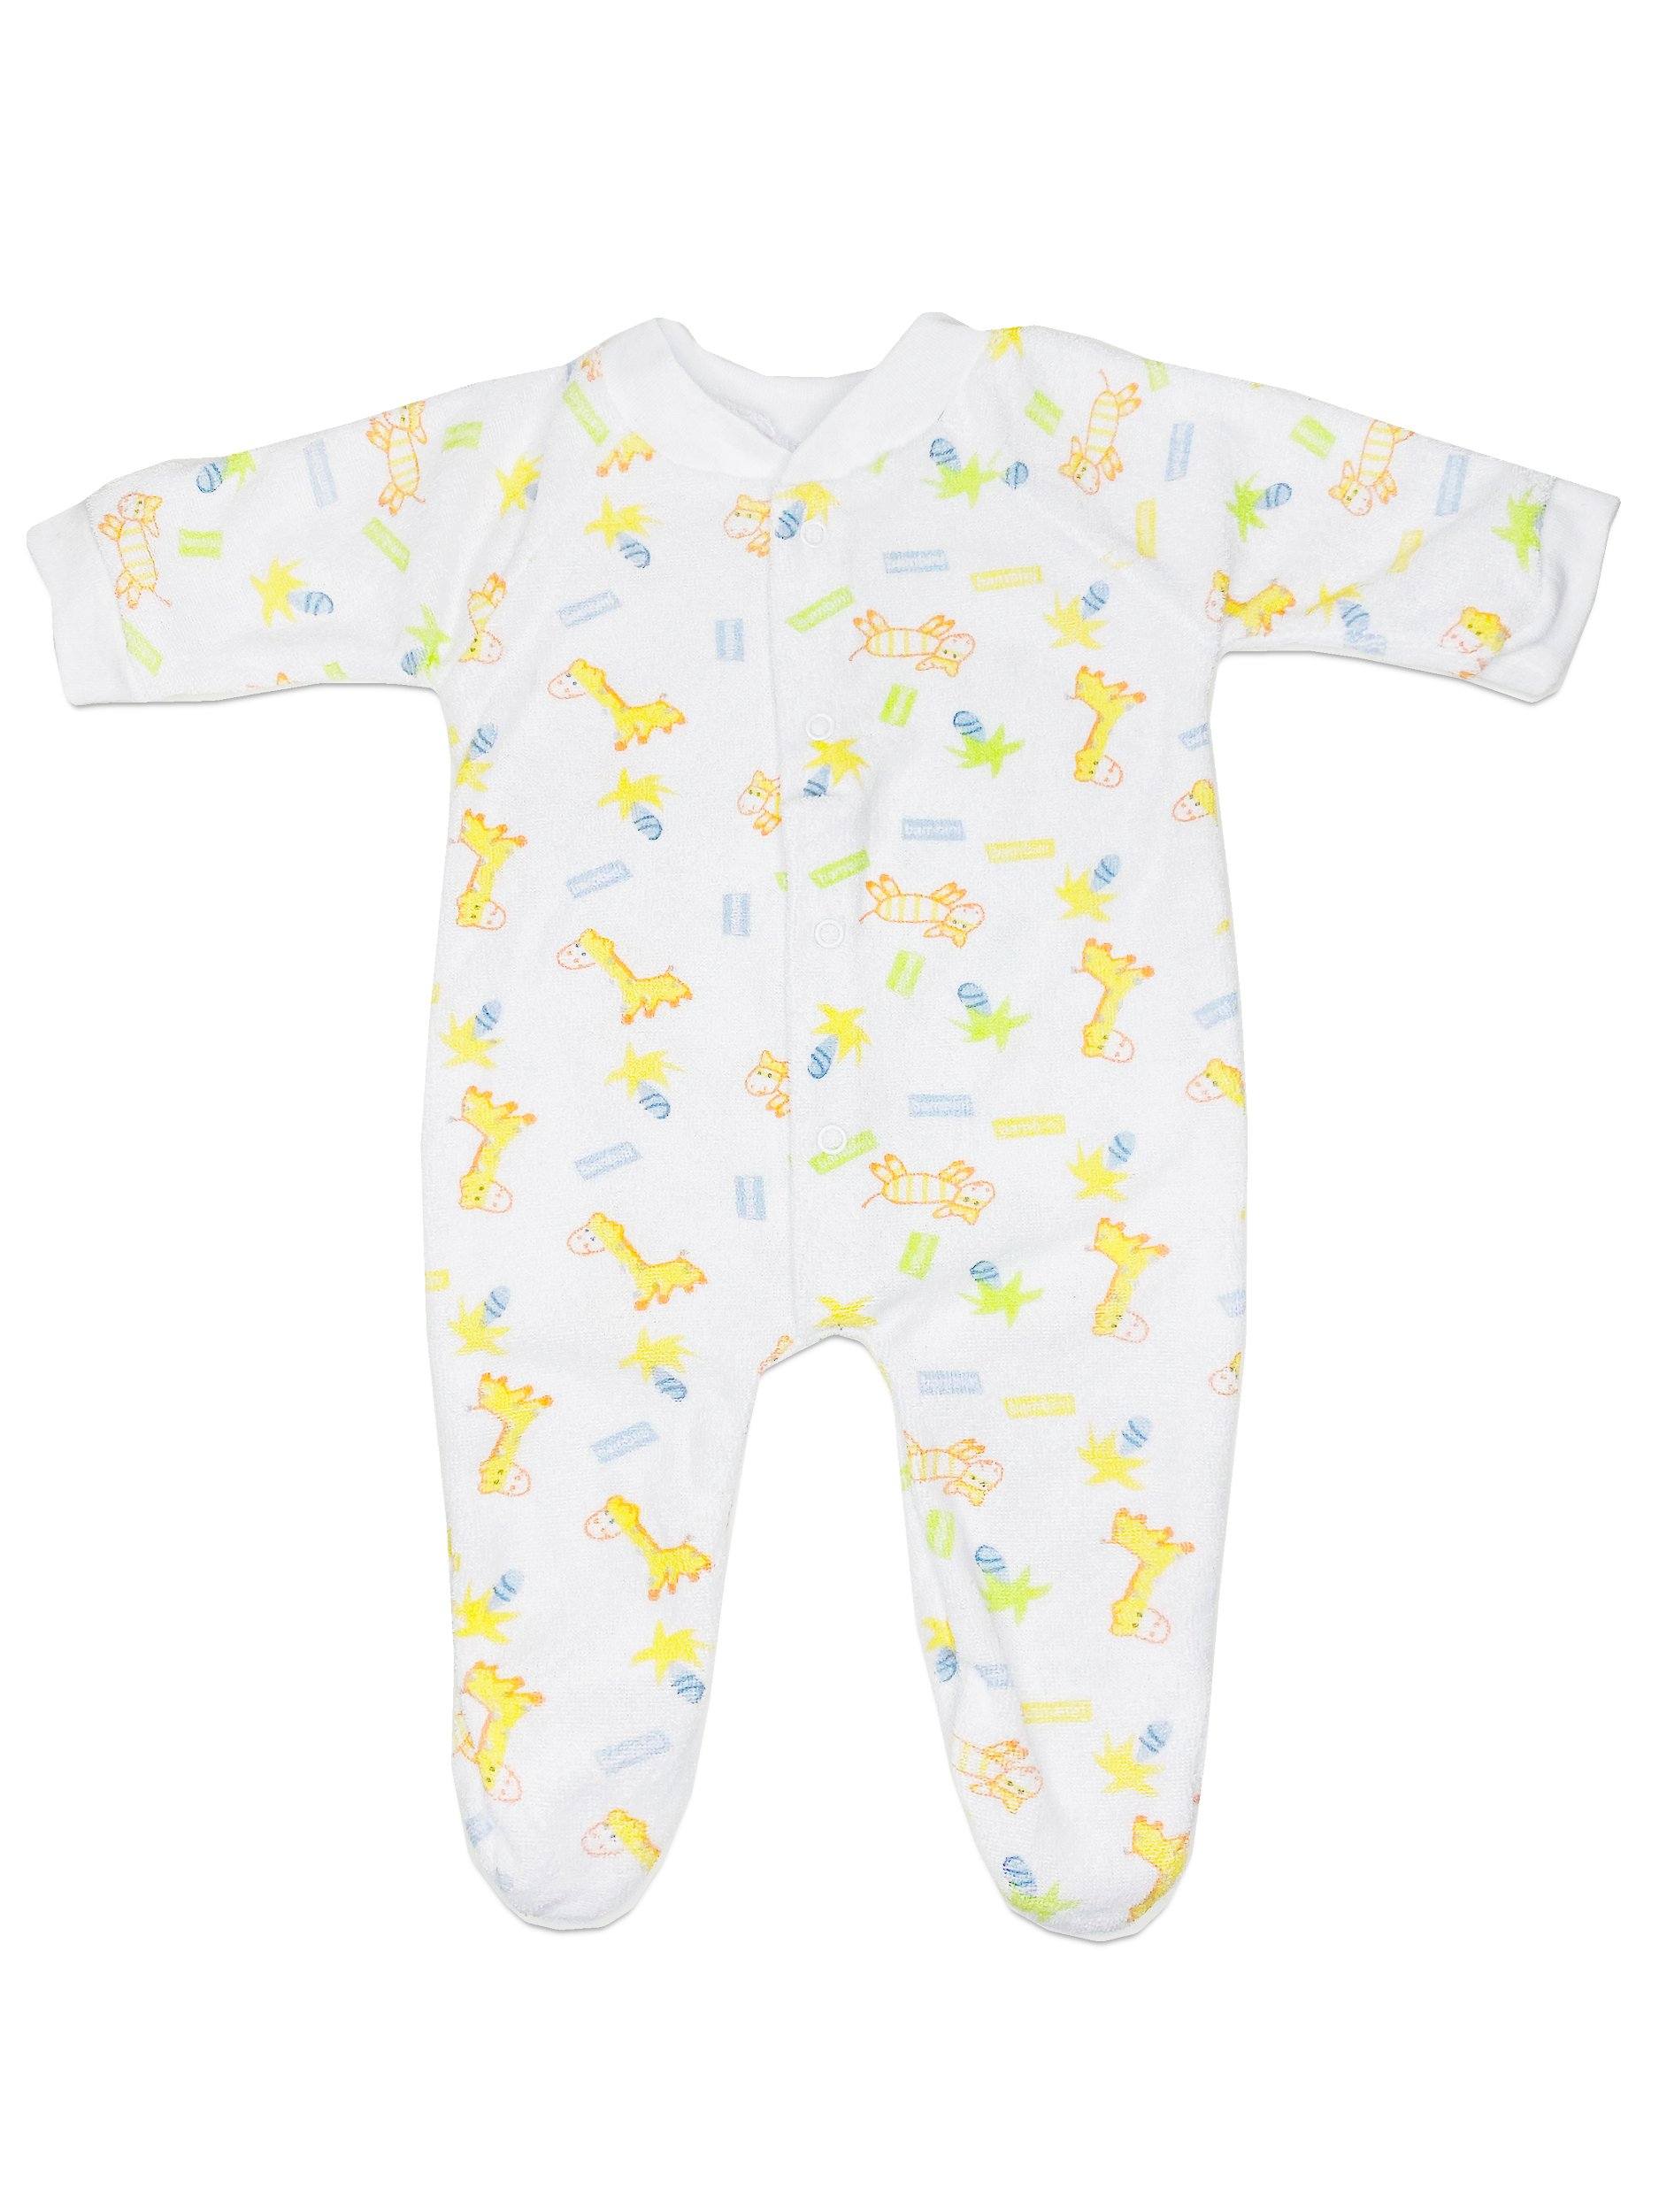 Terrycloth Tiny Baby Sleepsuit - Giraffe Print - Sleepsuit / Babygrow - Bambini